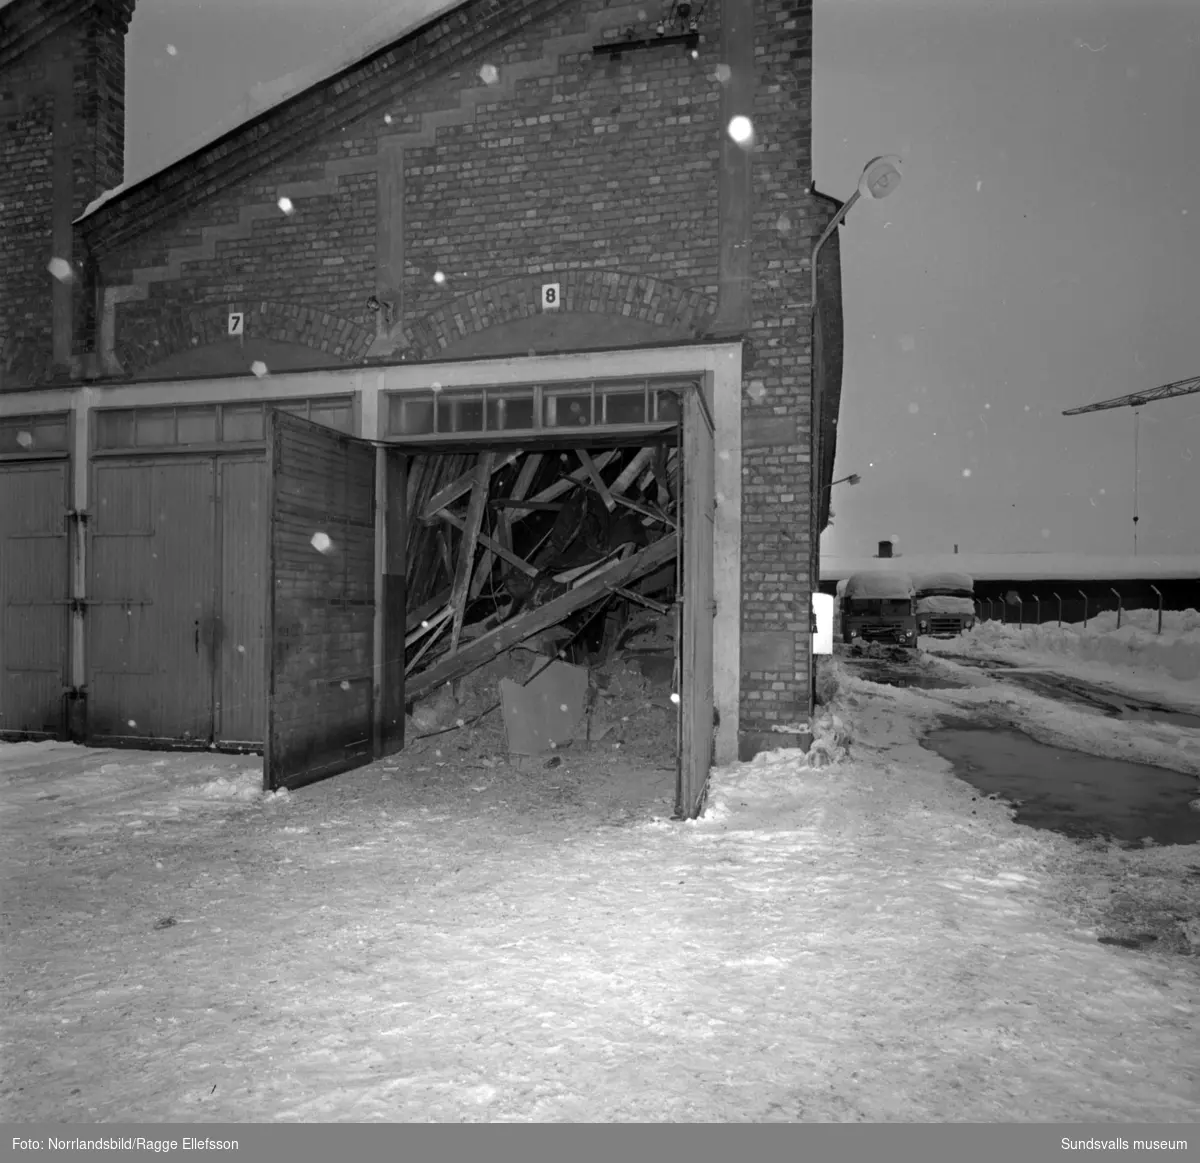 En tidig morgon i slutet av december 1965 blev snömassornas tyngd för mycket för taket på stadens bussgarage vid Landsvägsallén. Lyckligtvis hade de 30-talet bussförarna precis hunnit iväg för att påbörja dagens körningar då taket till de tidigare spårvagnsstallarna rasade samman. Chaufförerna hade dock parkerat sina privata bilar i garaget så de materiella skadorna blev stora. En buss och tre personbilar totalförstördes och ytterligare ett tiotal bilar skadades. Två av garagelängorna fick rivas helt medan de två vänstra finns kvar än i dag (2017).